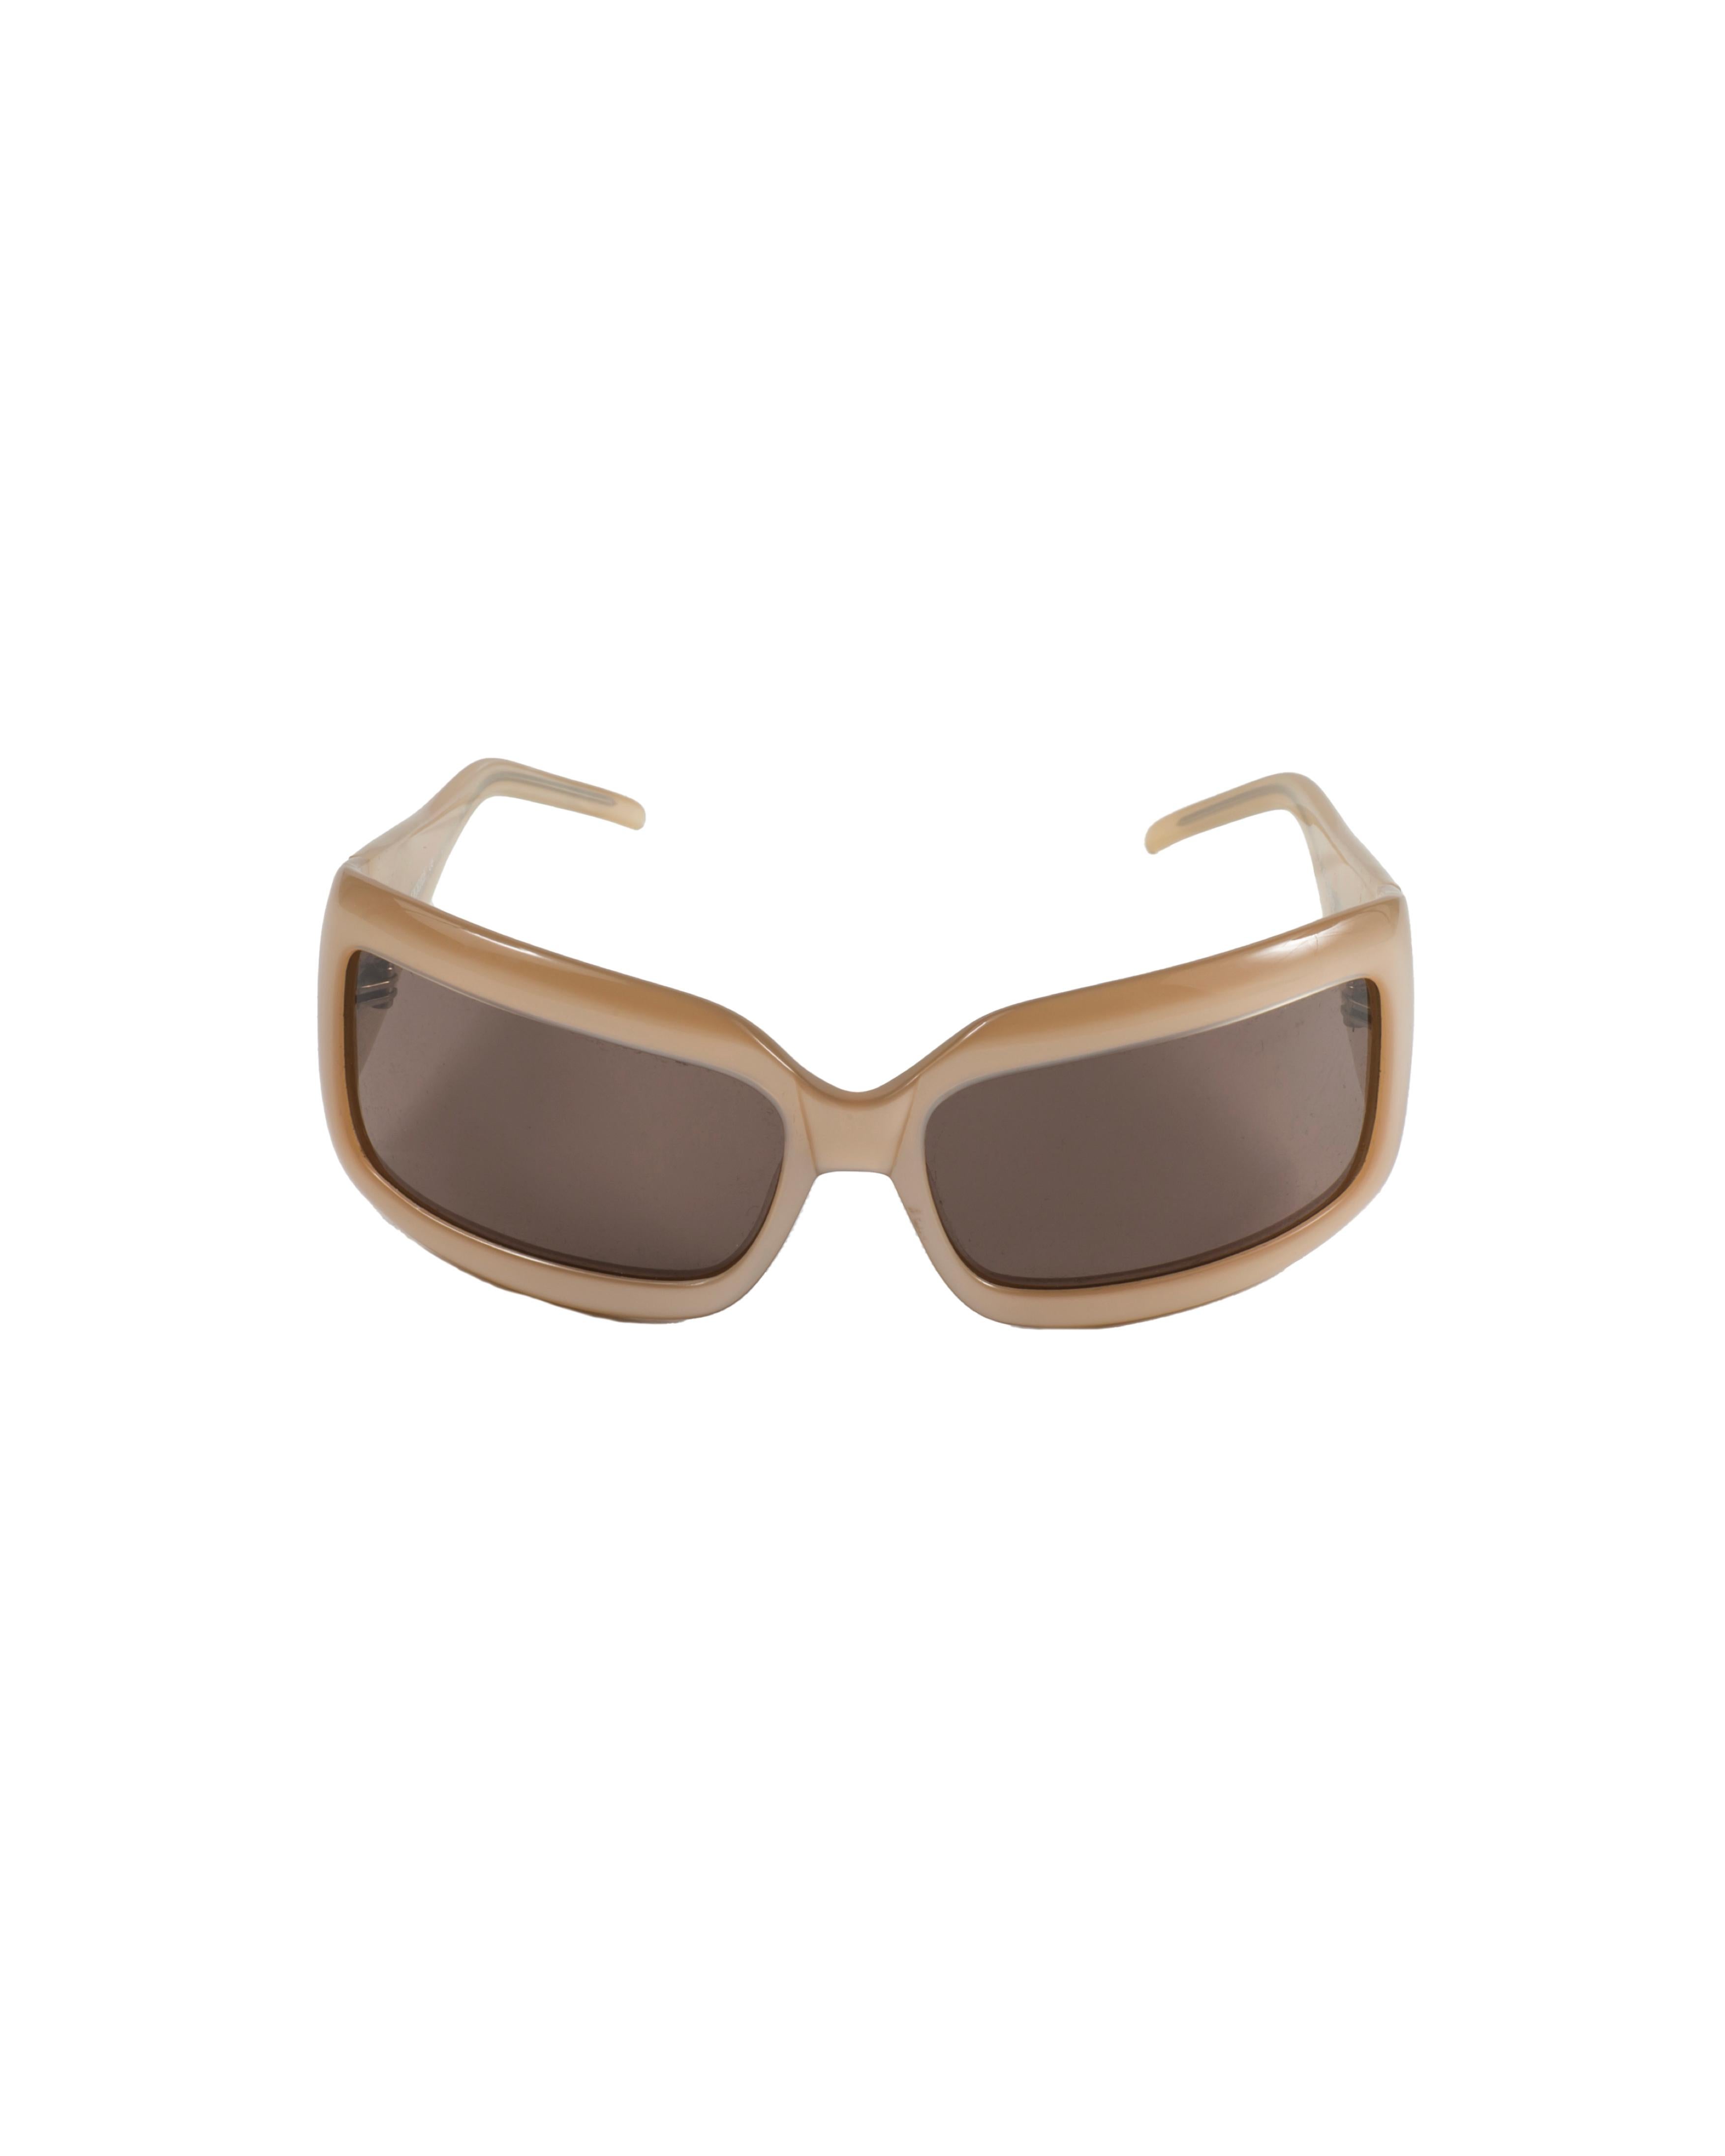 Gianfranco Ferrè S/S 2006 Julia Roberts pearl logo sunglasses In Good Condition For Sale In Rome, IT